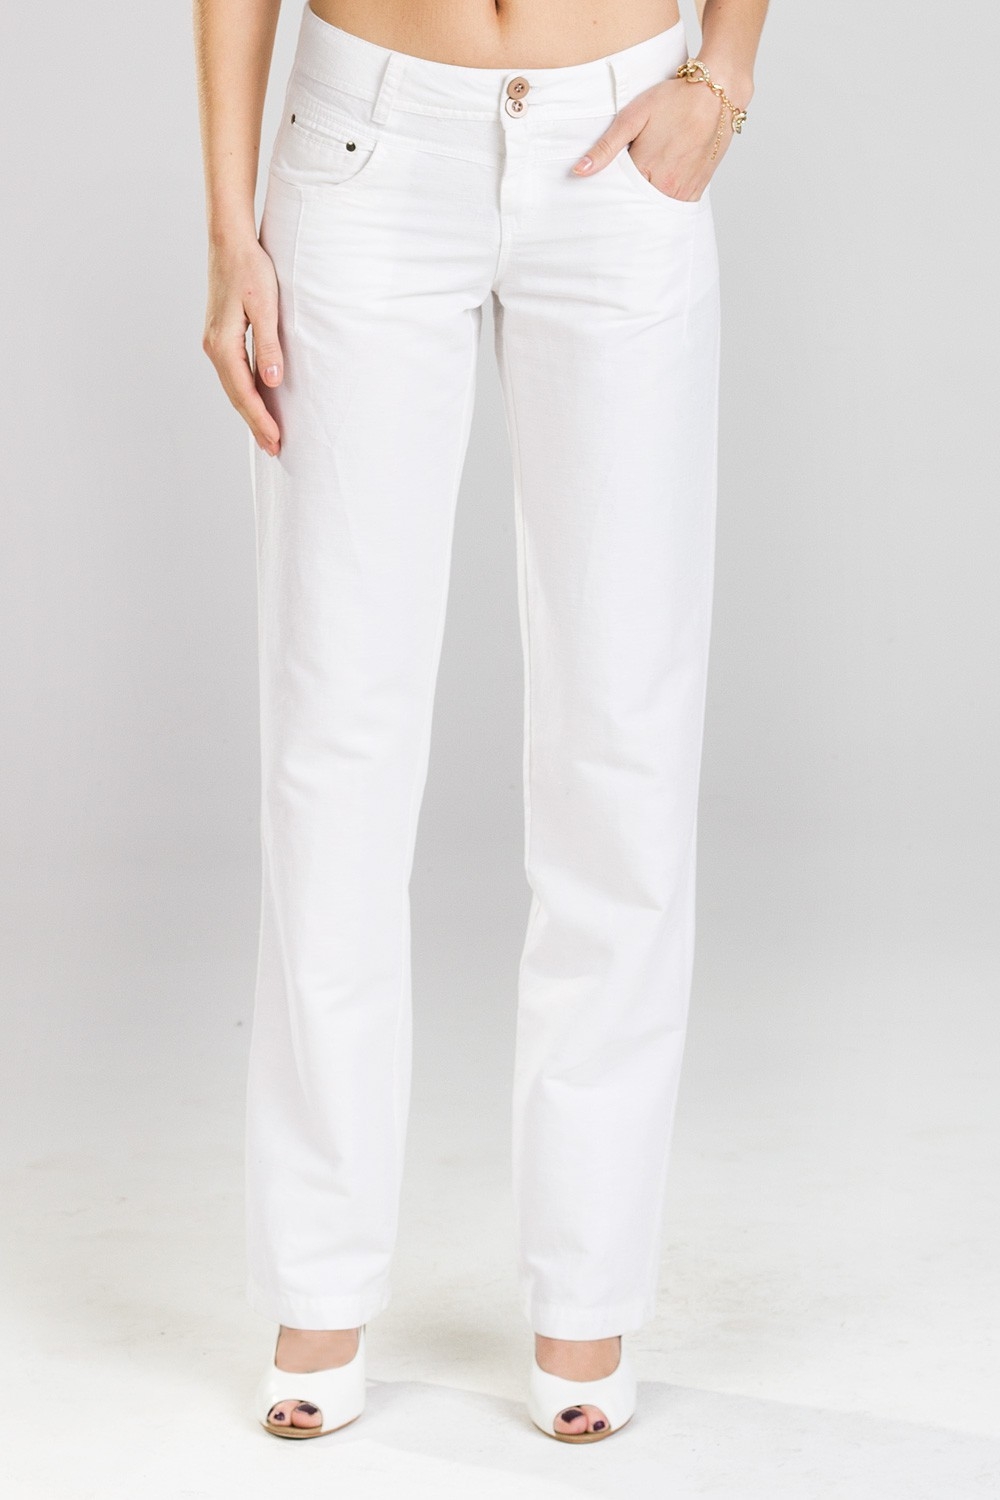 Валберис белые брюки. Брюки женские VILATTE d44/068. Белые брюки женские. Белые штаны женские. Белые летние брюки женские.